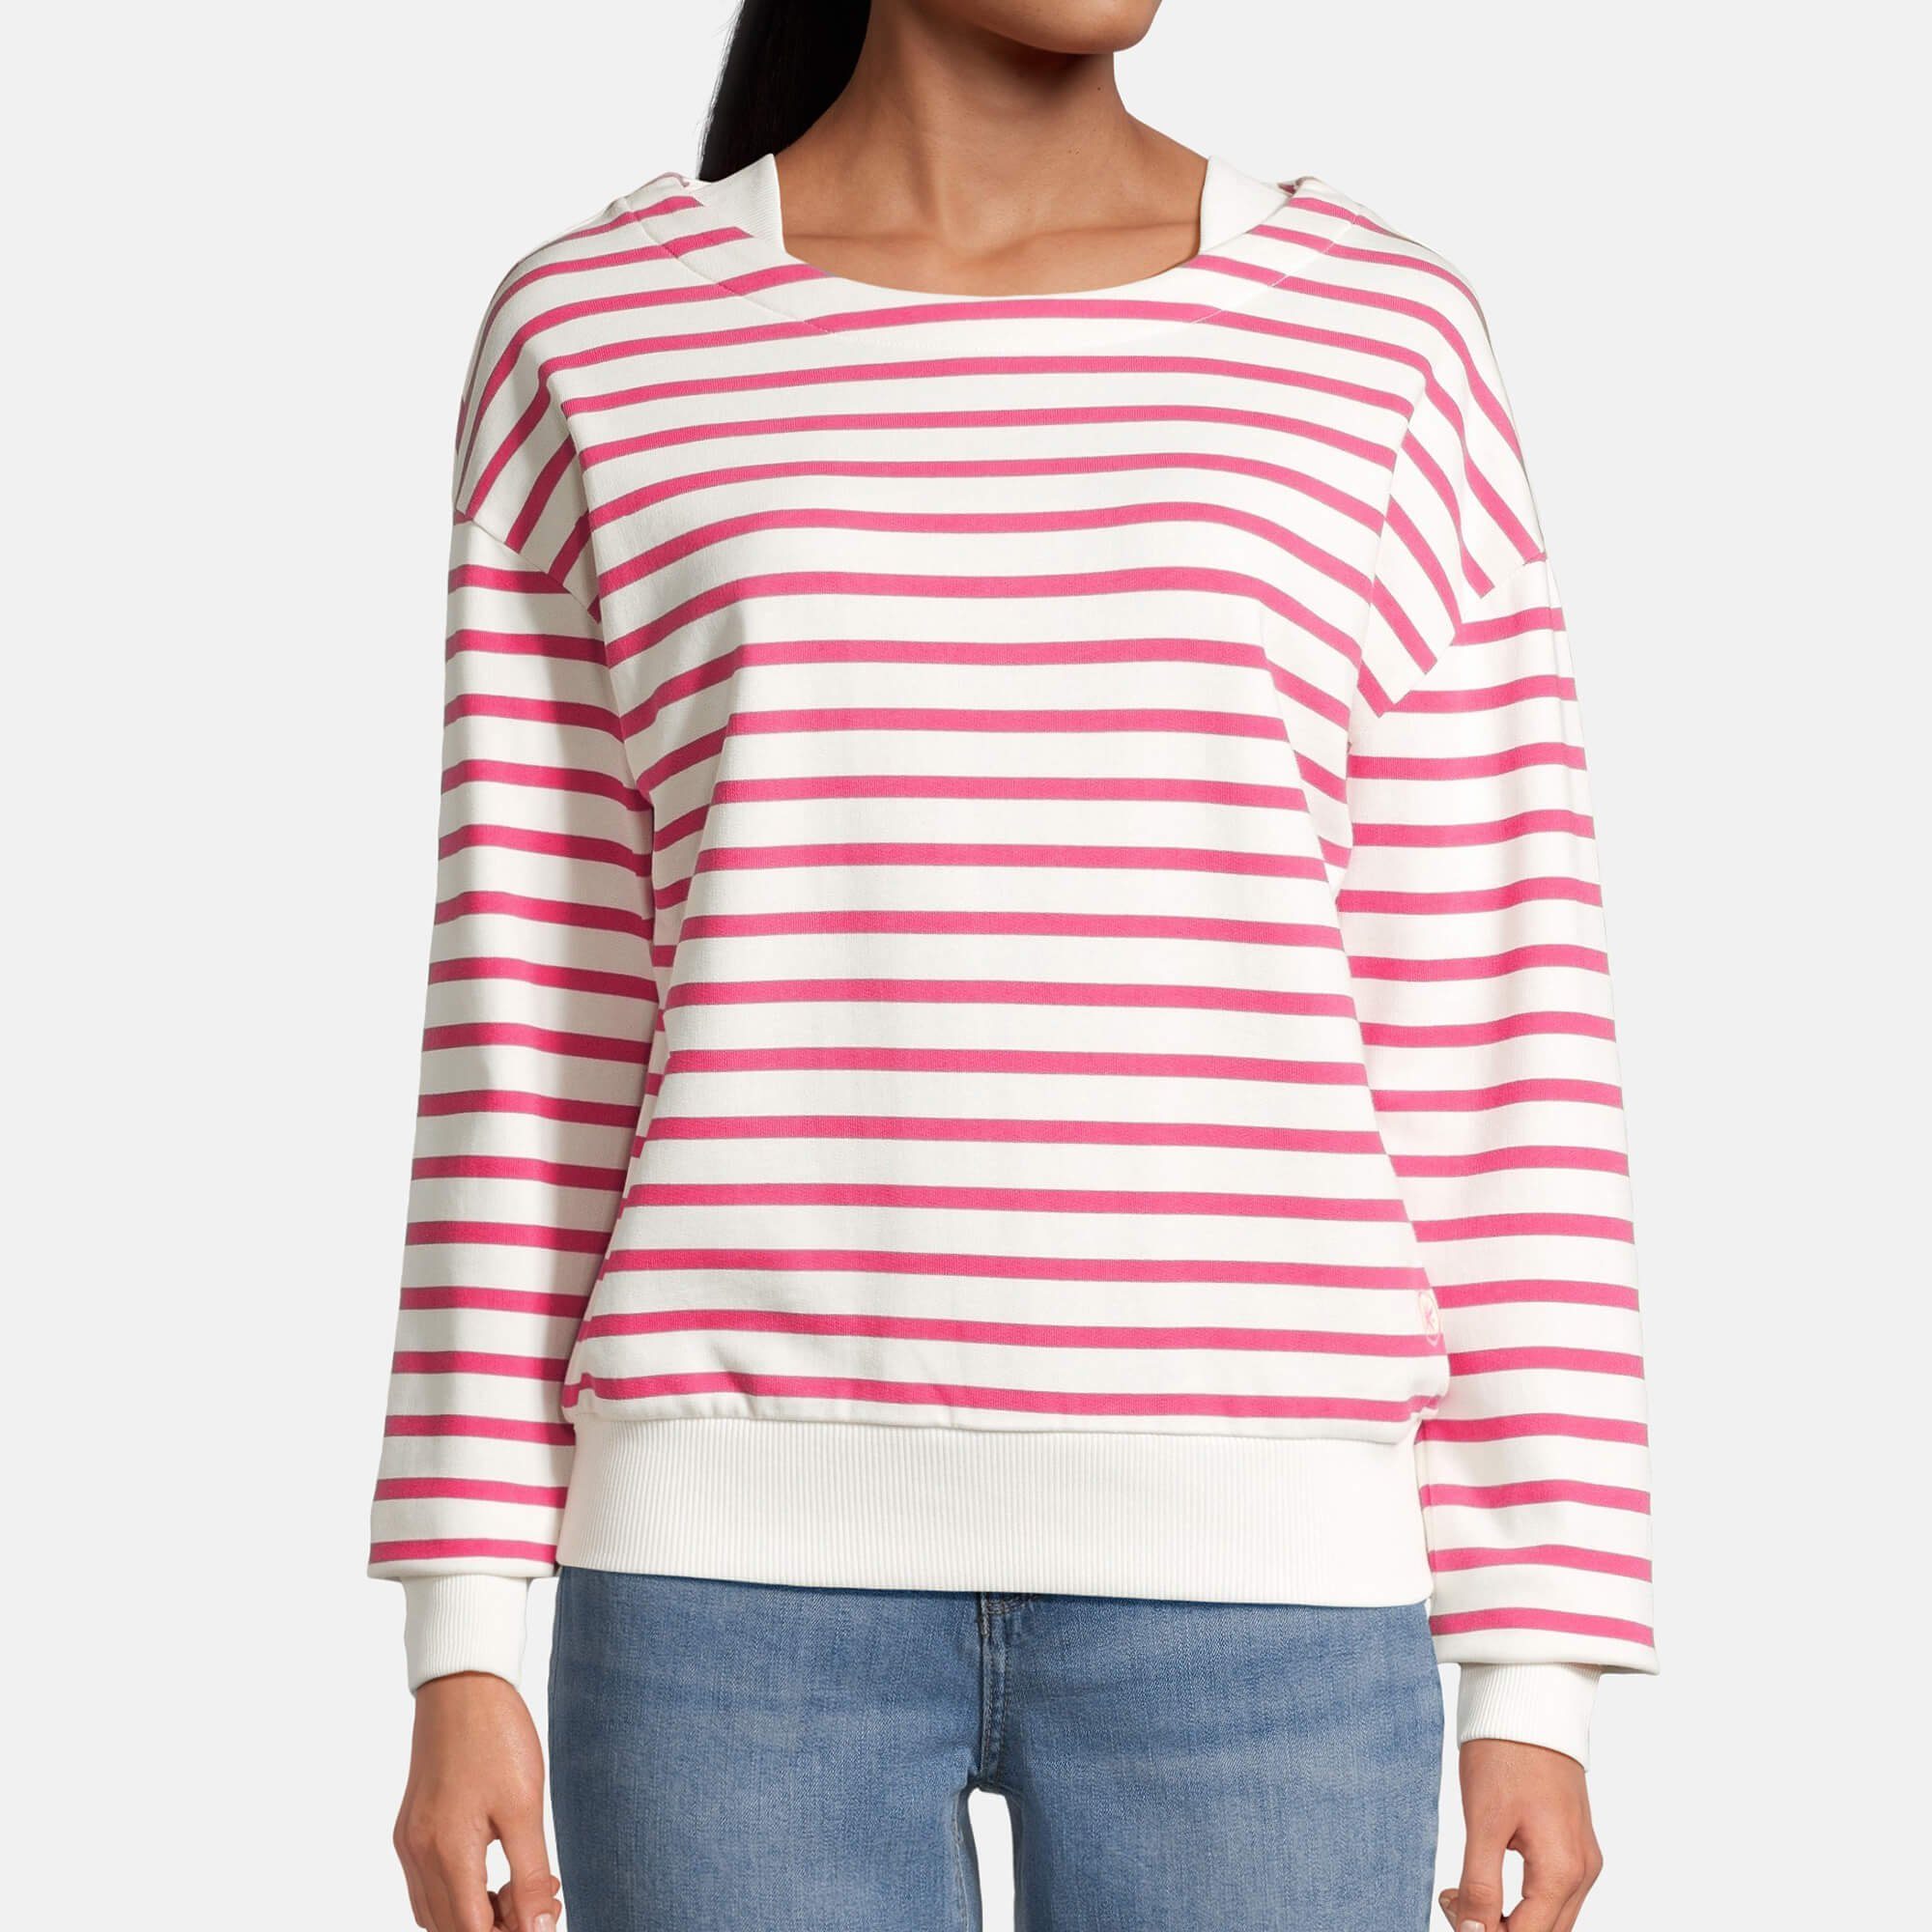 Streifenpullover offwhite Damen pink mit Sweater / Boatneck-Ausschnitt Laff und Pullover Streifen salzhaut